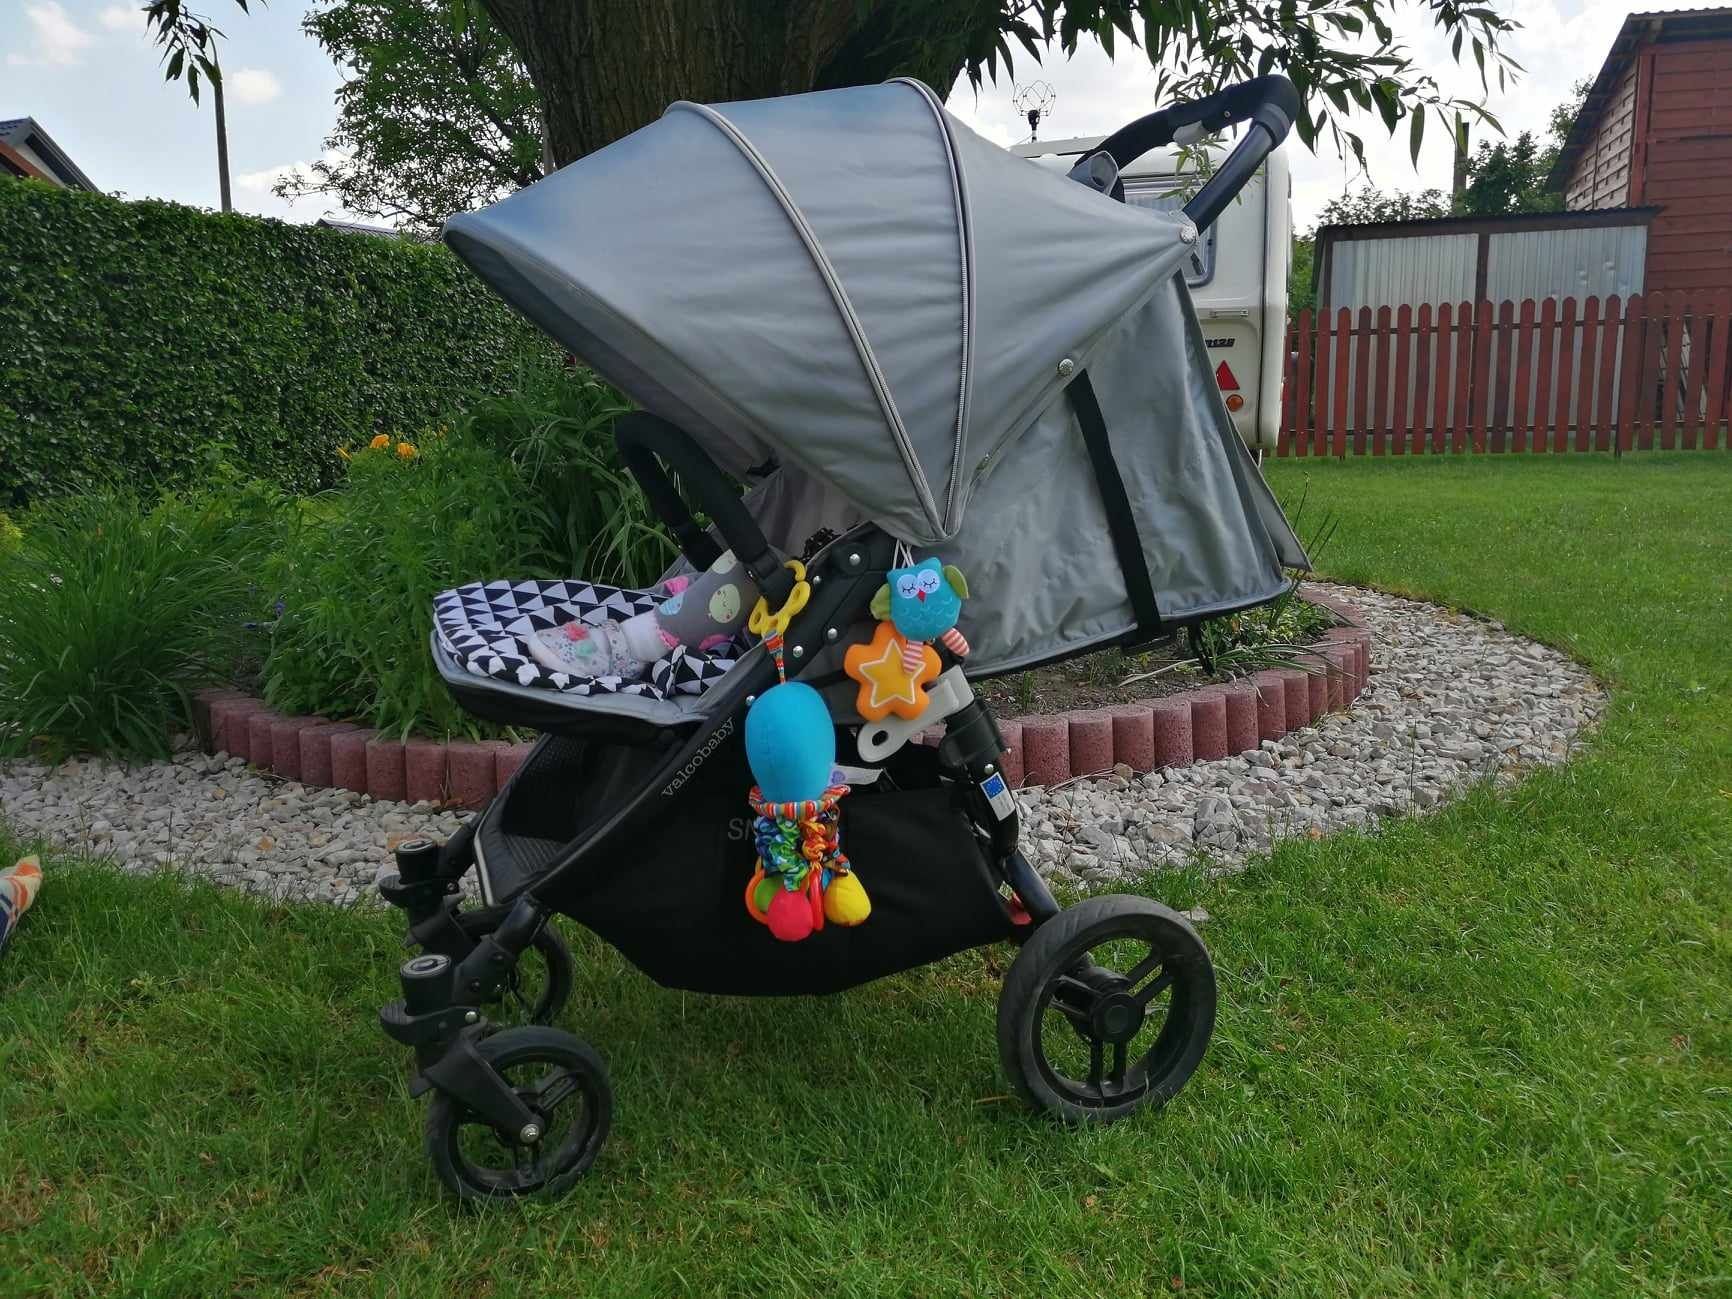 Wózek Valco Baby Snap4 - wózek spacerowy + okrycie na nóżki